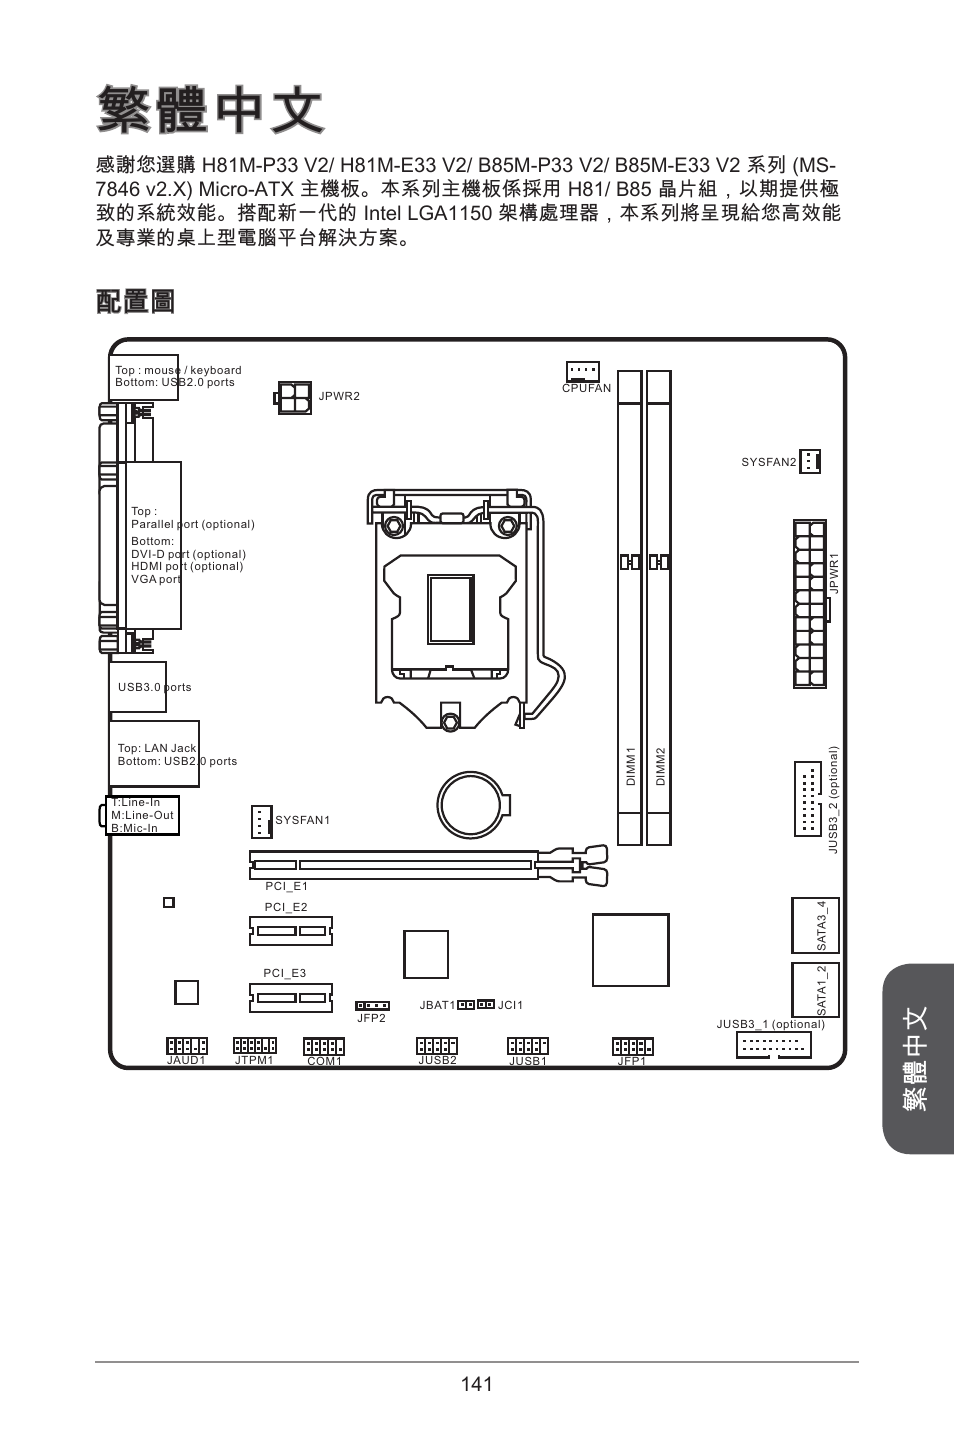 繁體中文 | MSI H81M-E33 V2 User Manual | Page 141 / 182 | Original mode